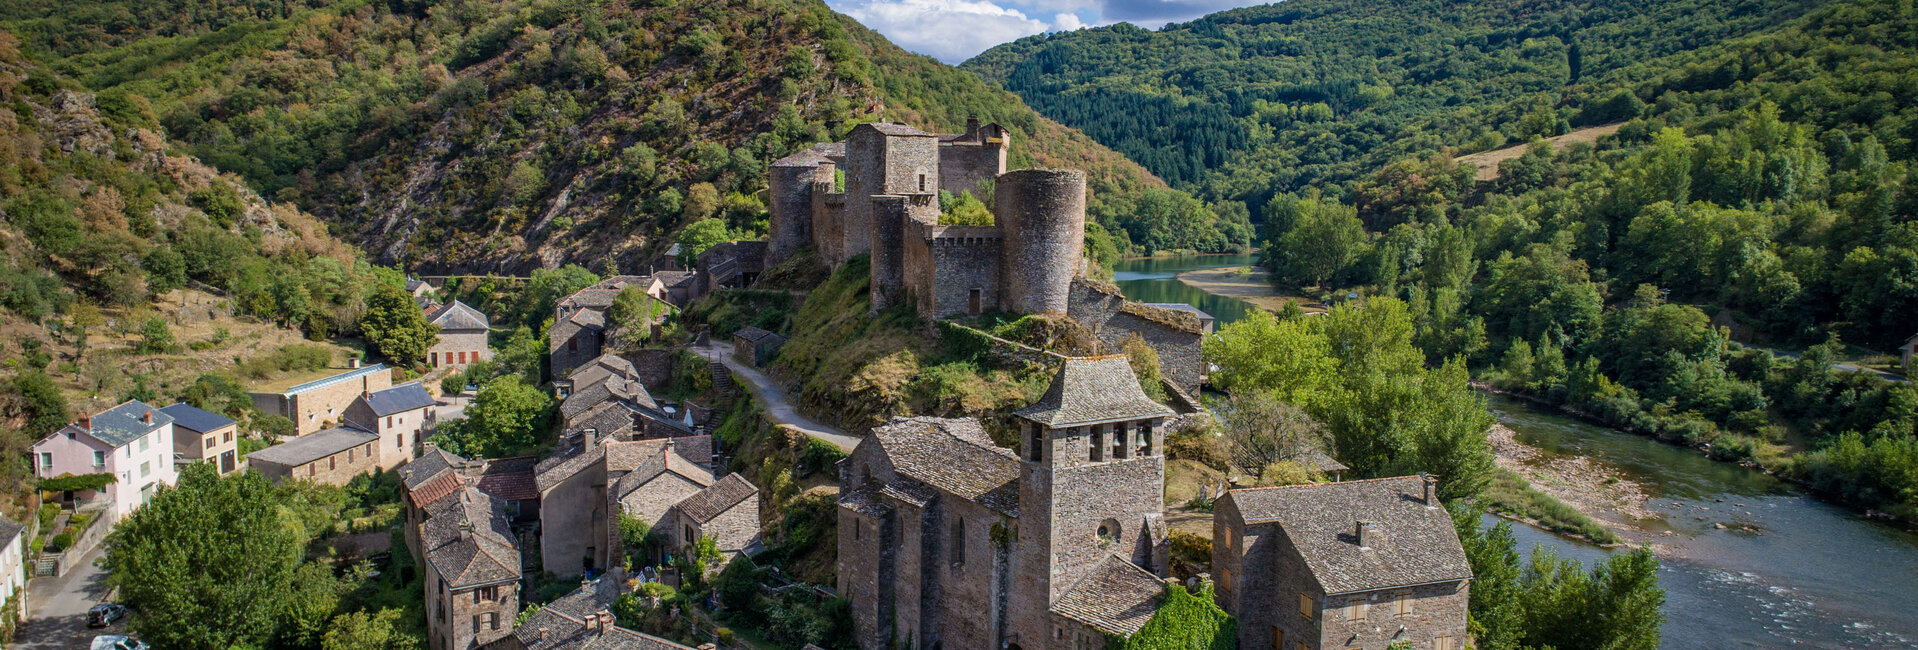 Le château commune de brousse le chateau - Aveyron